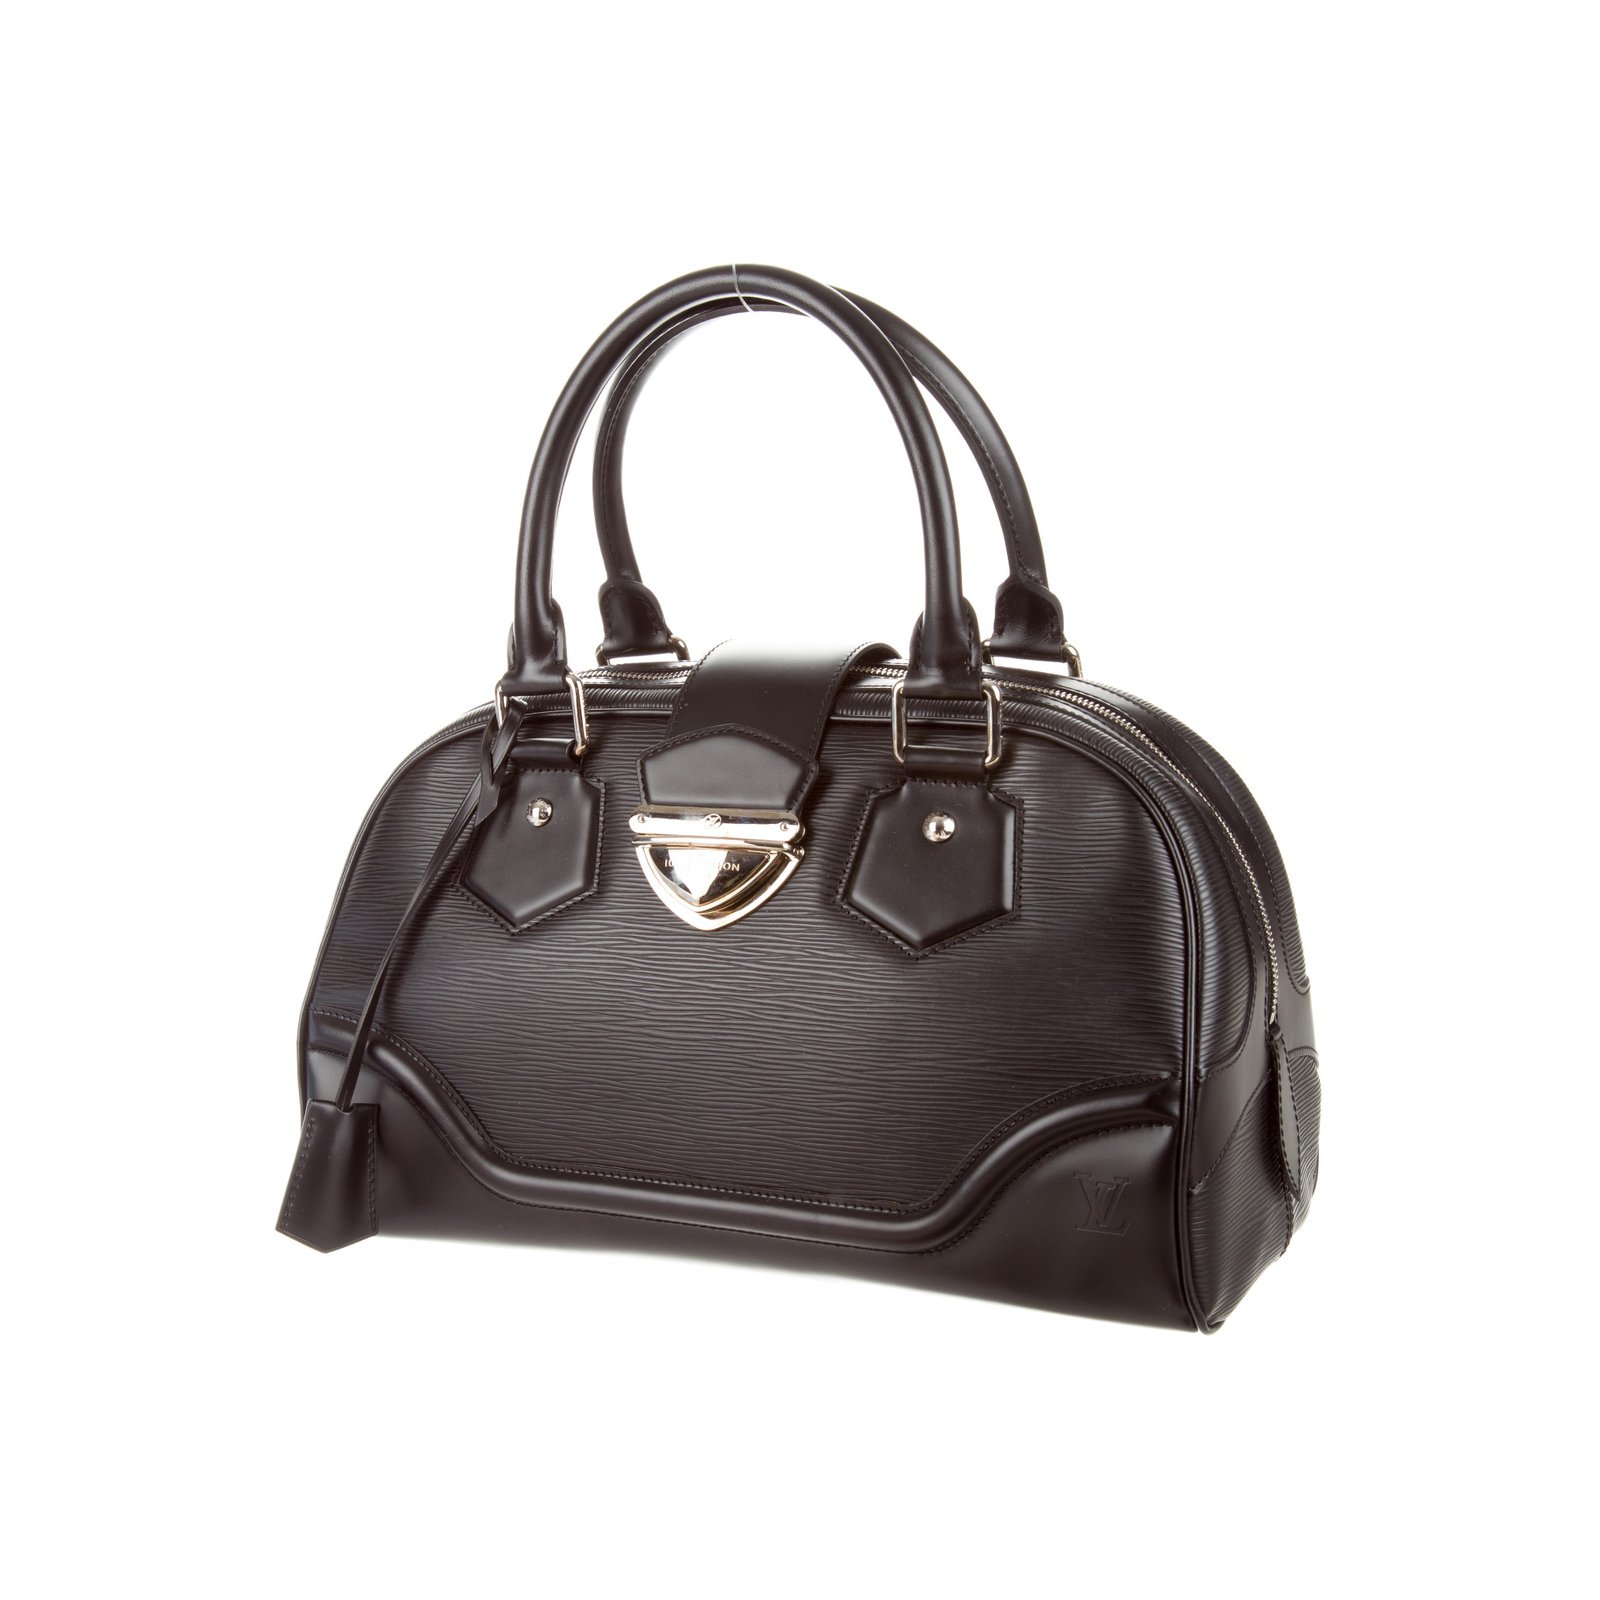 Louis Vuitton, Bags, Louis Vuitton Montaigne Bowling Bag Epi Leather Gm  Black